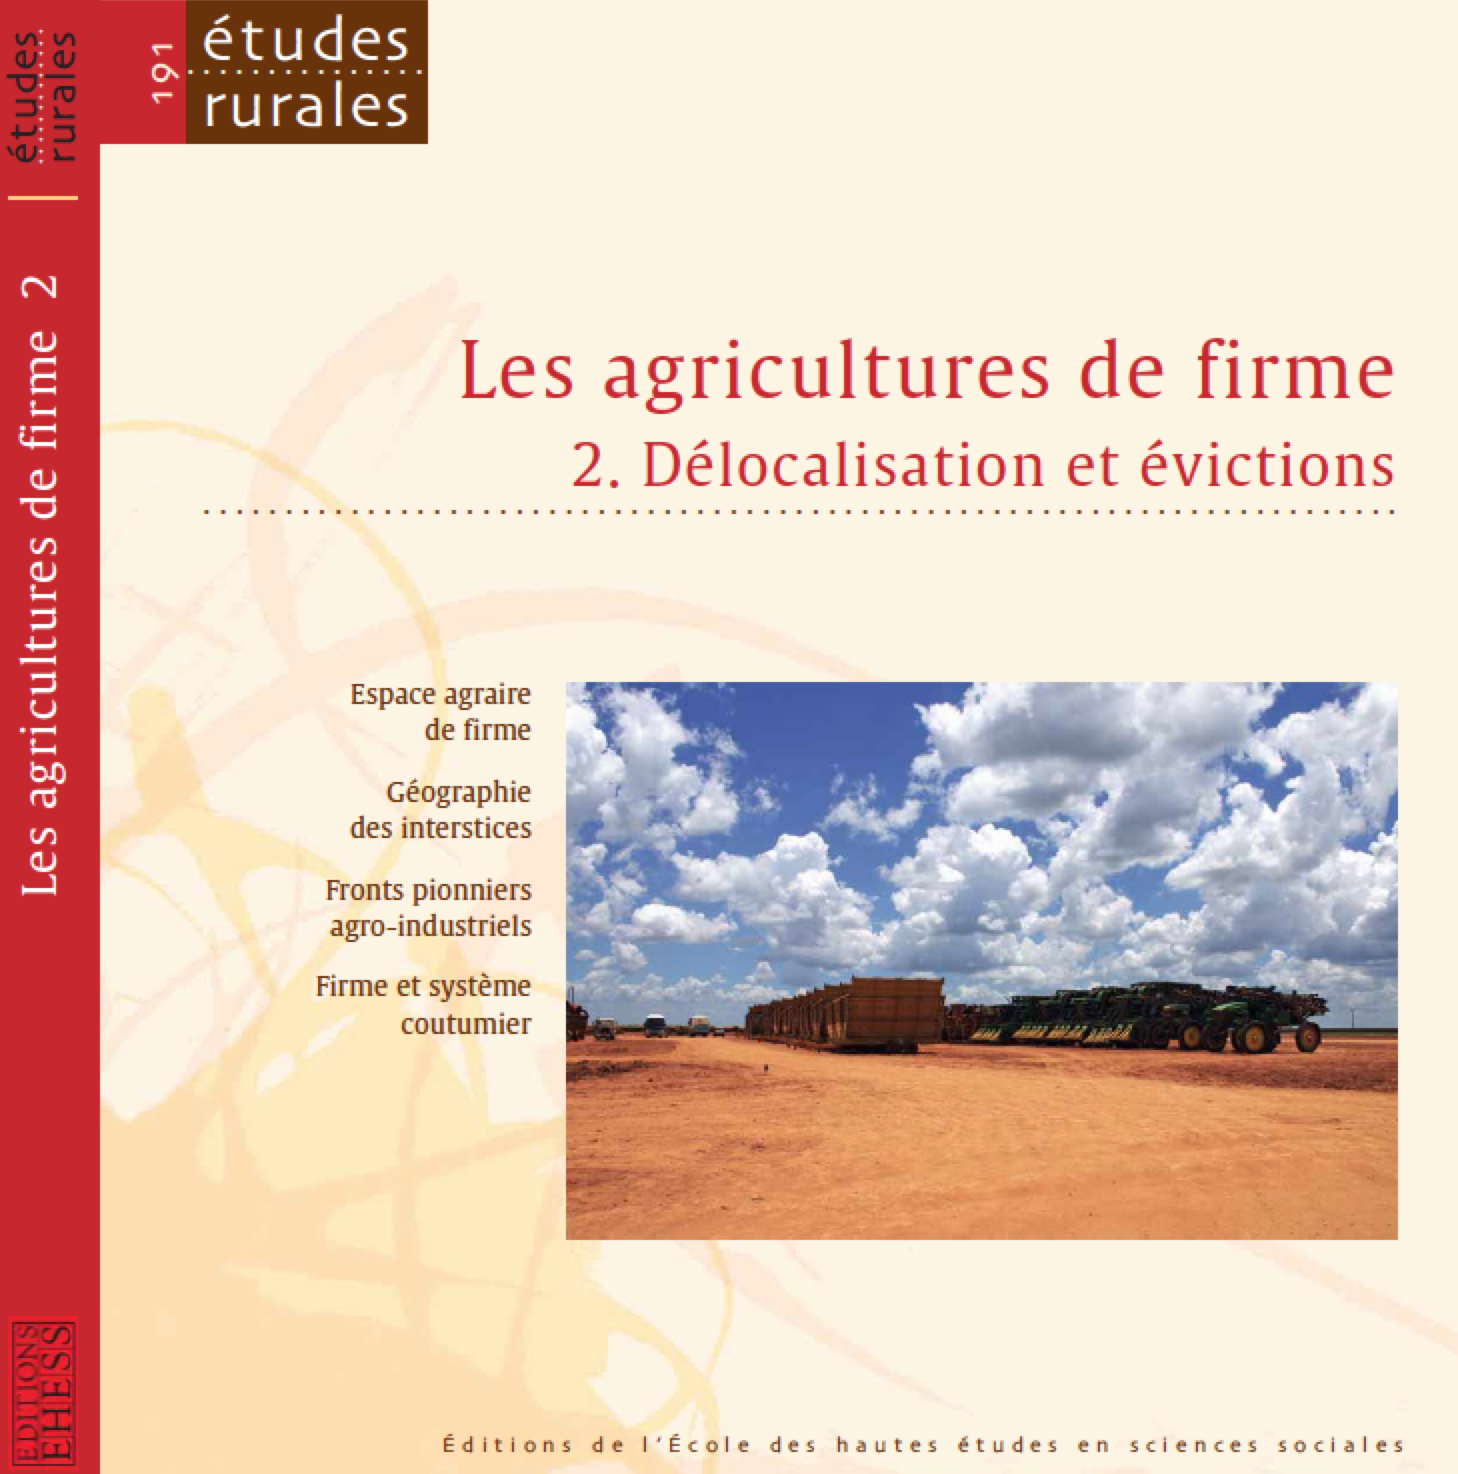 Agricultures de firme : financiarisations, évictions et délocalisation